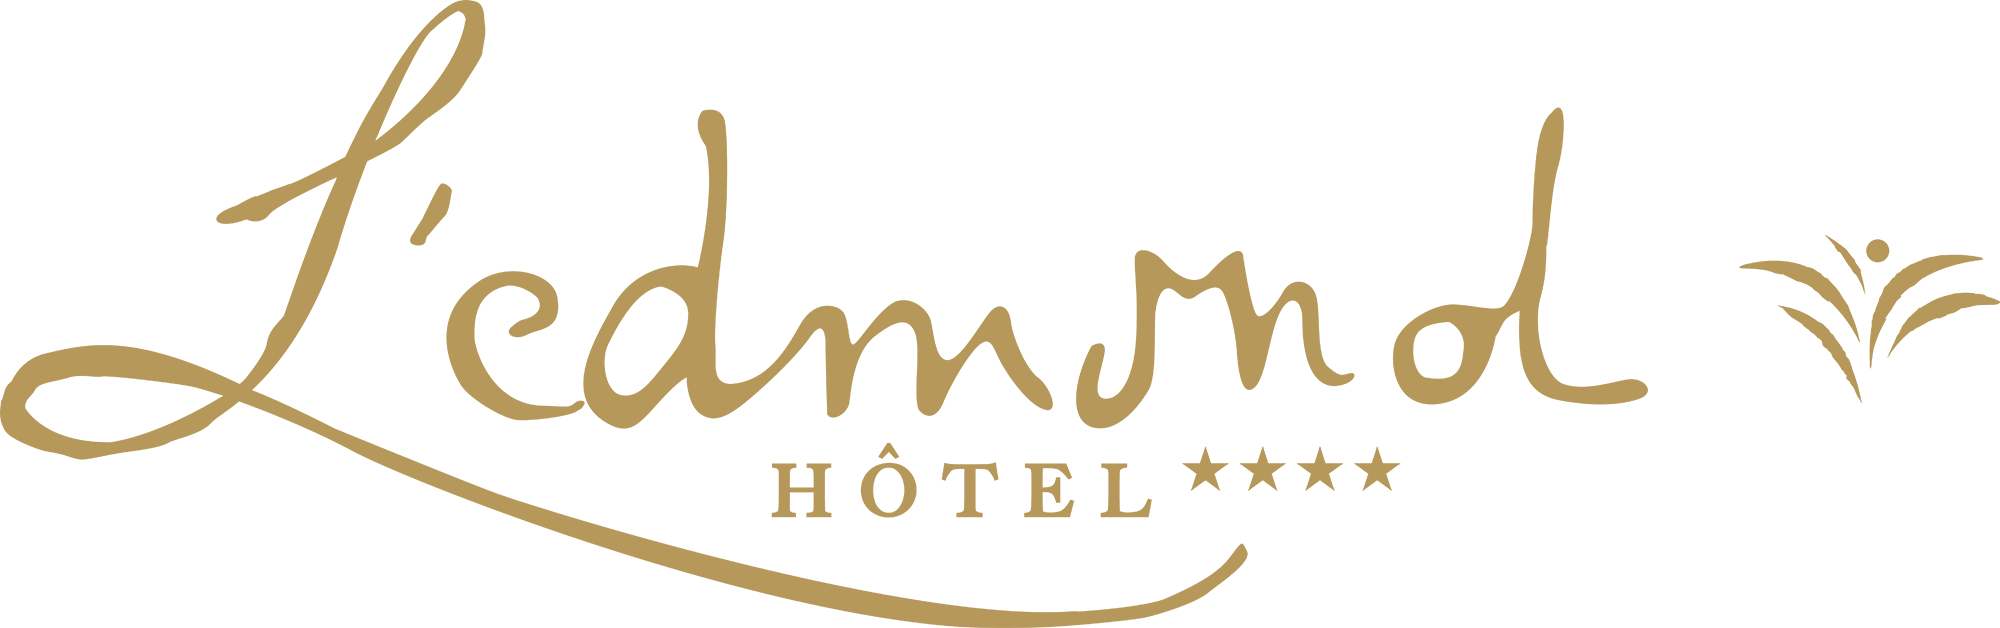 L'Edmond Hotel